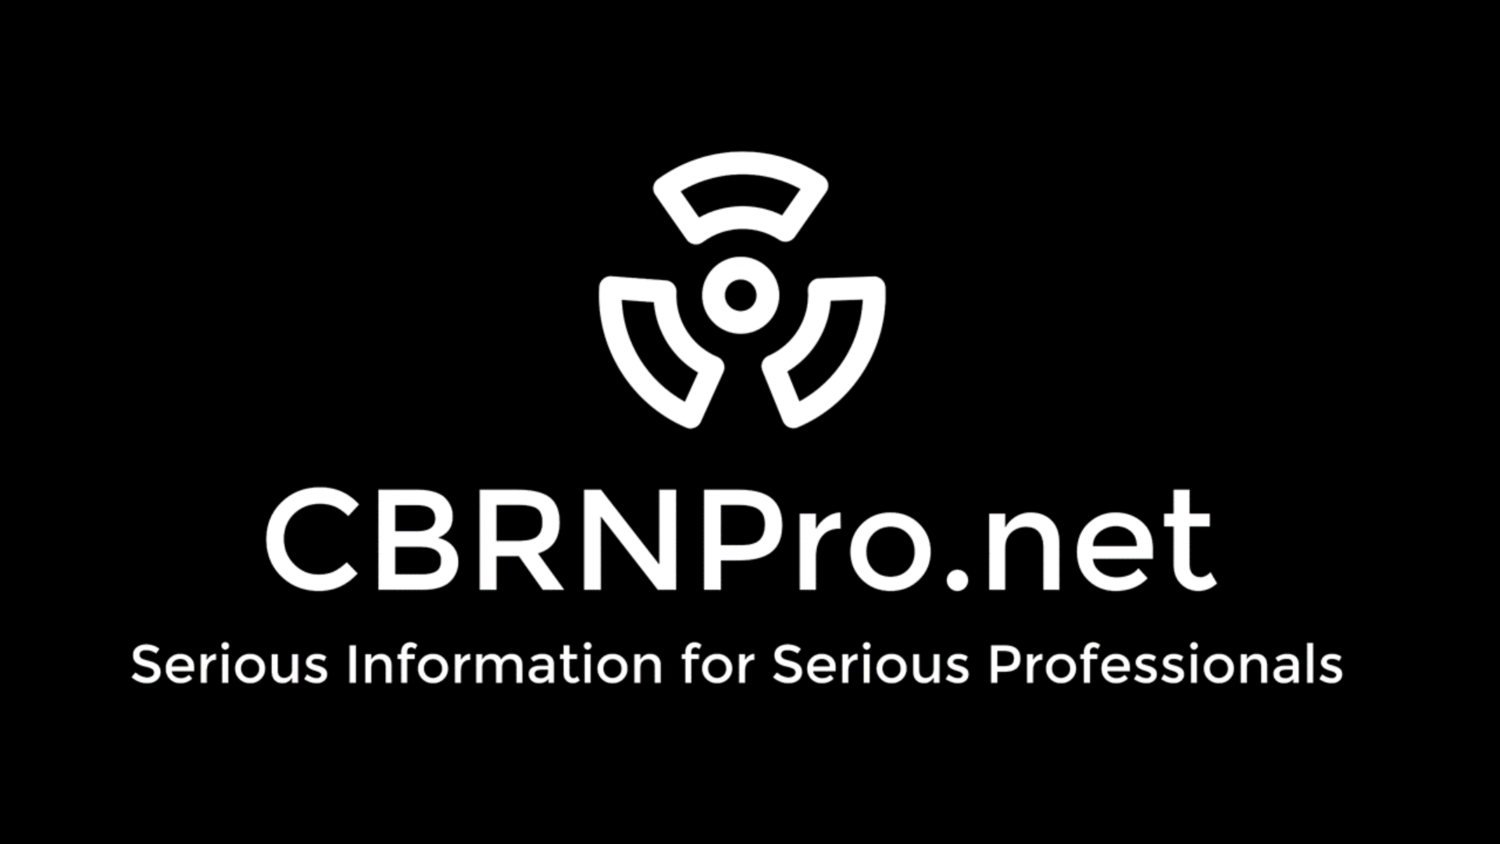 CBRNPro.net